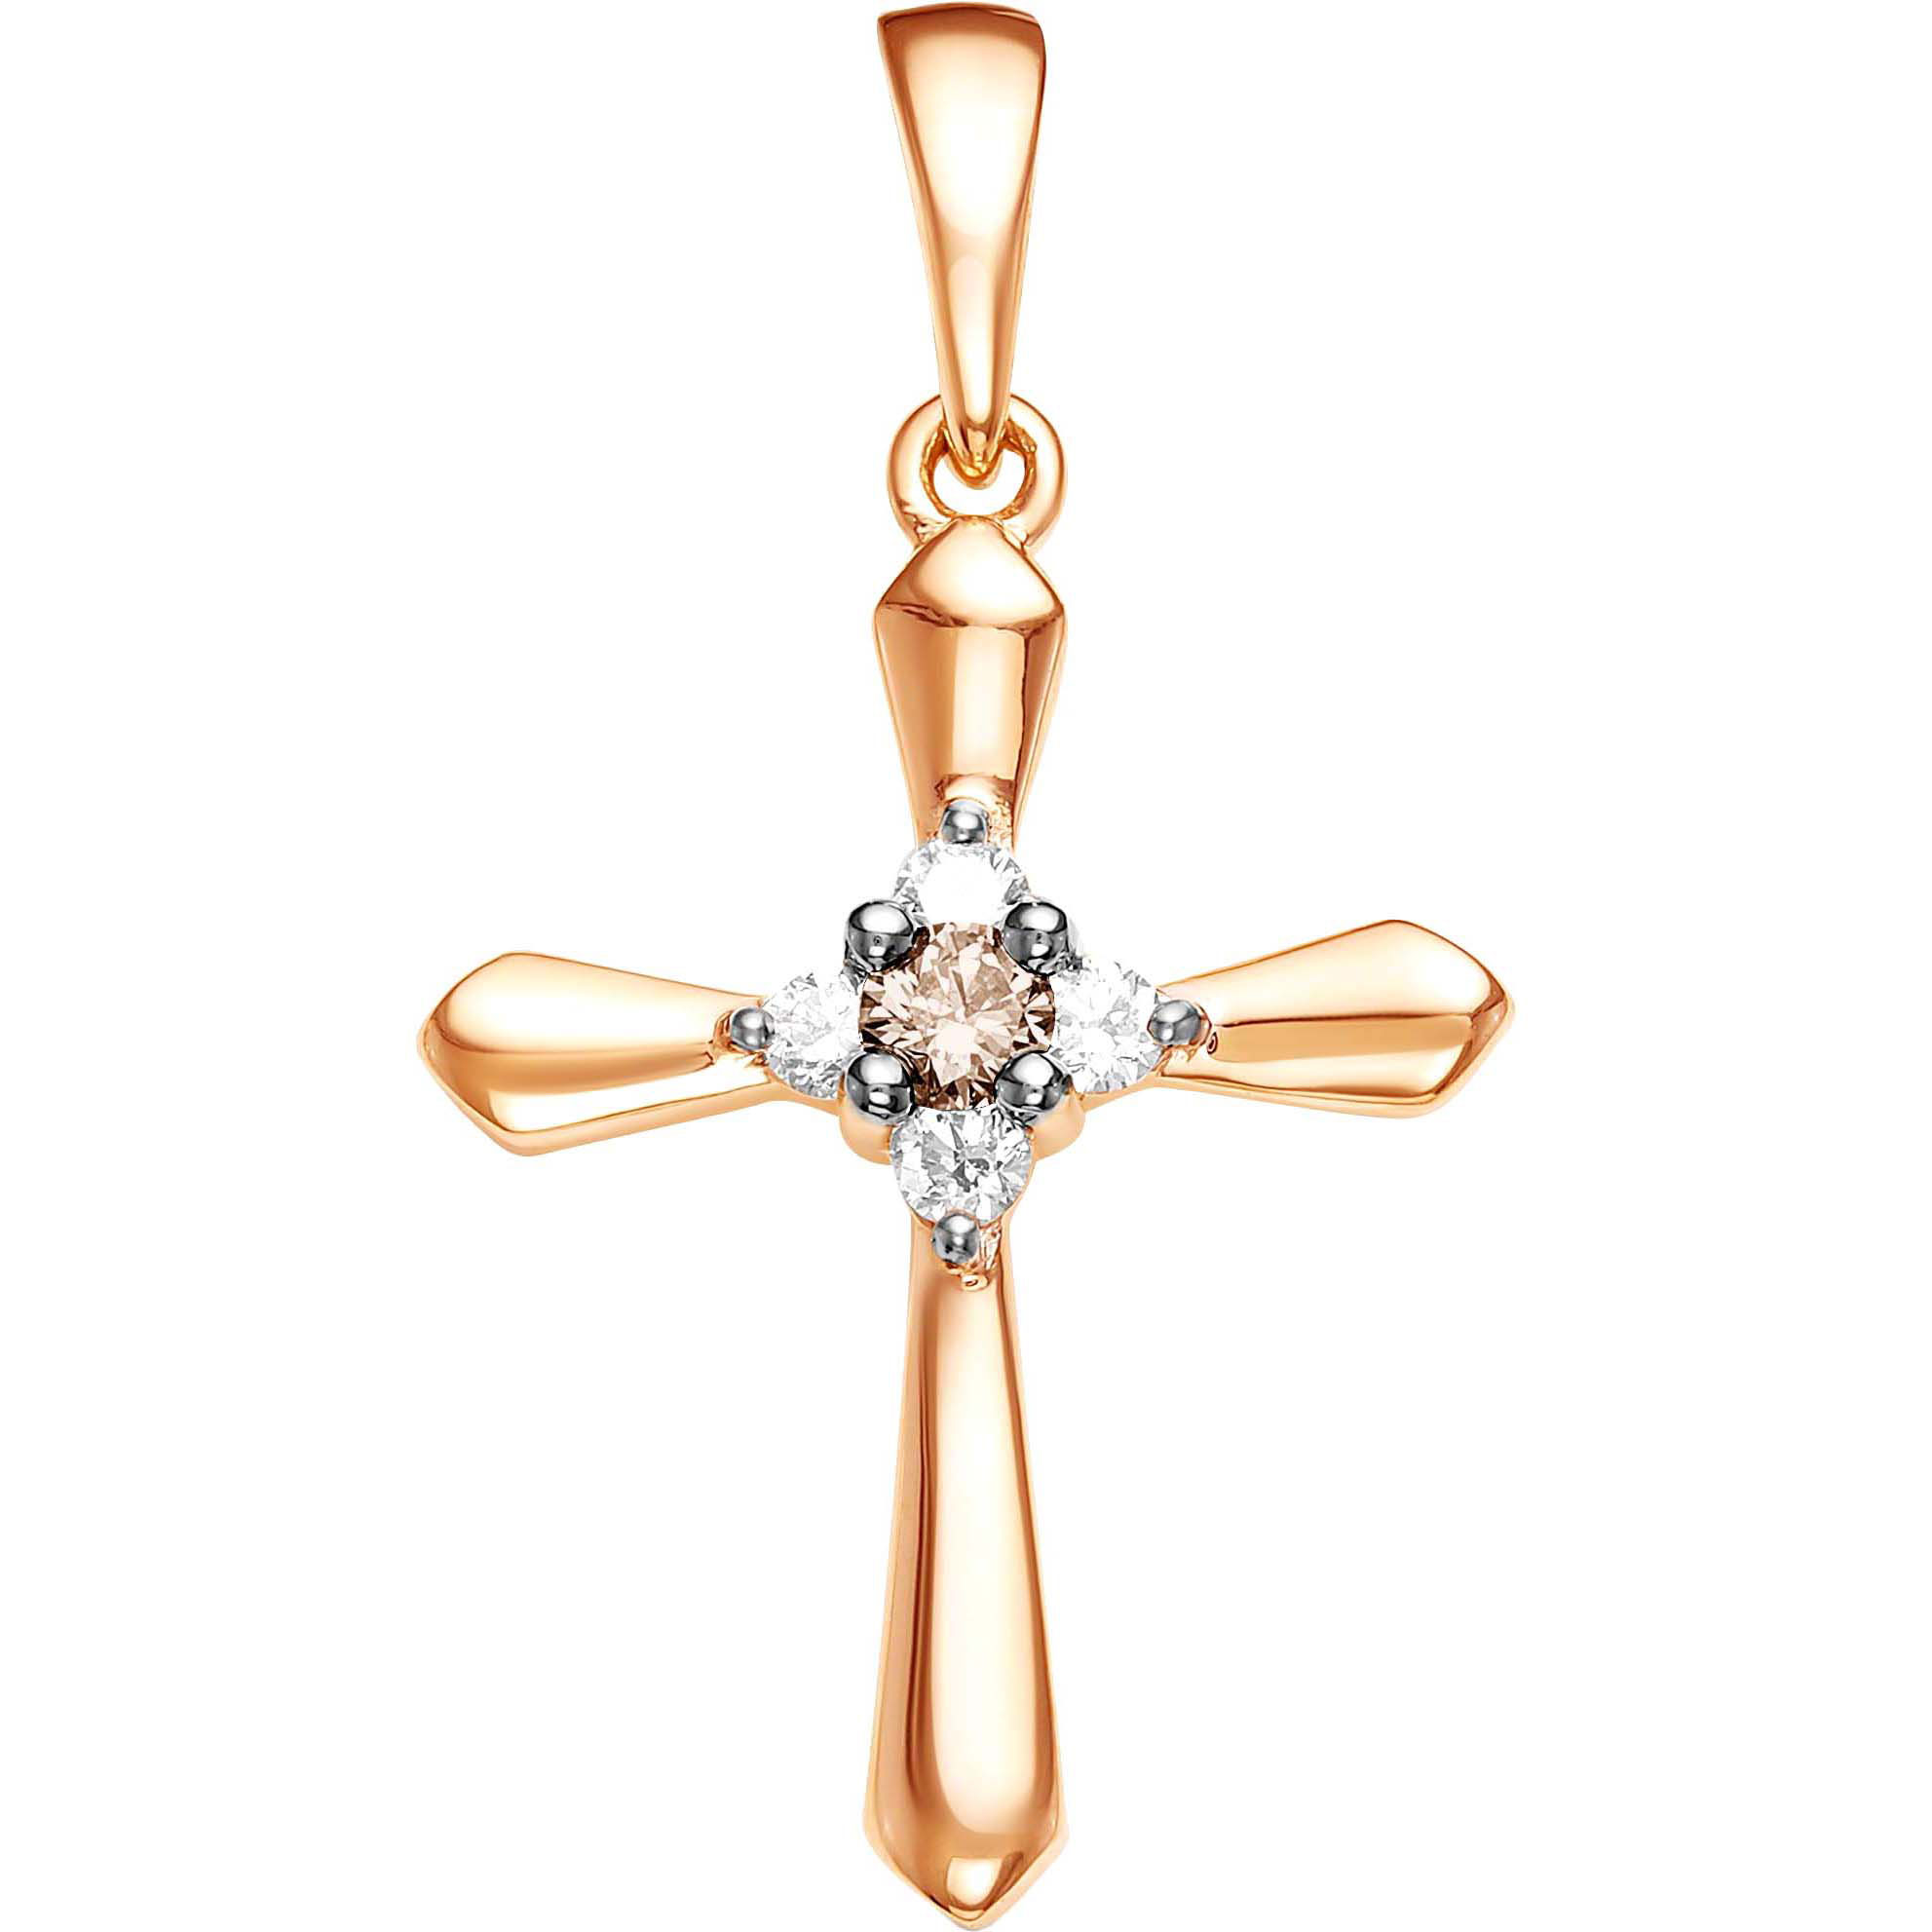 Женский декоративный золотой крестик Vesna jewelry 3212-151-162-00 с цветными бриллиантами